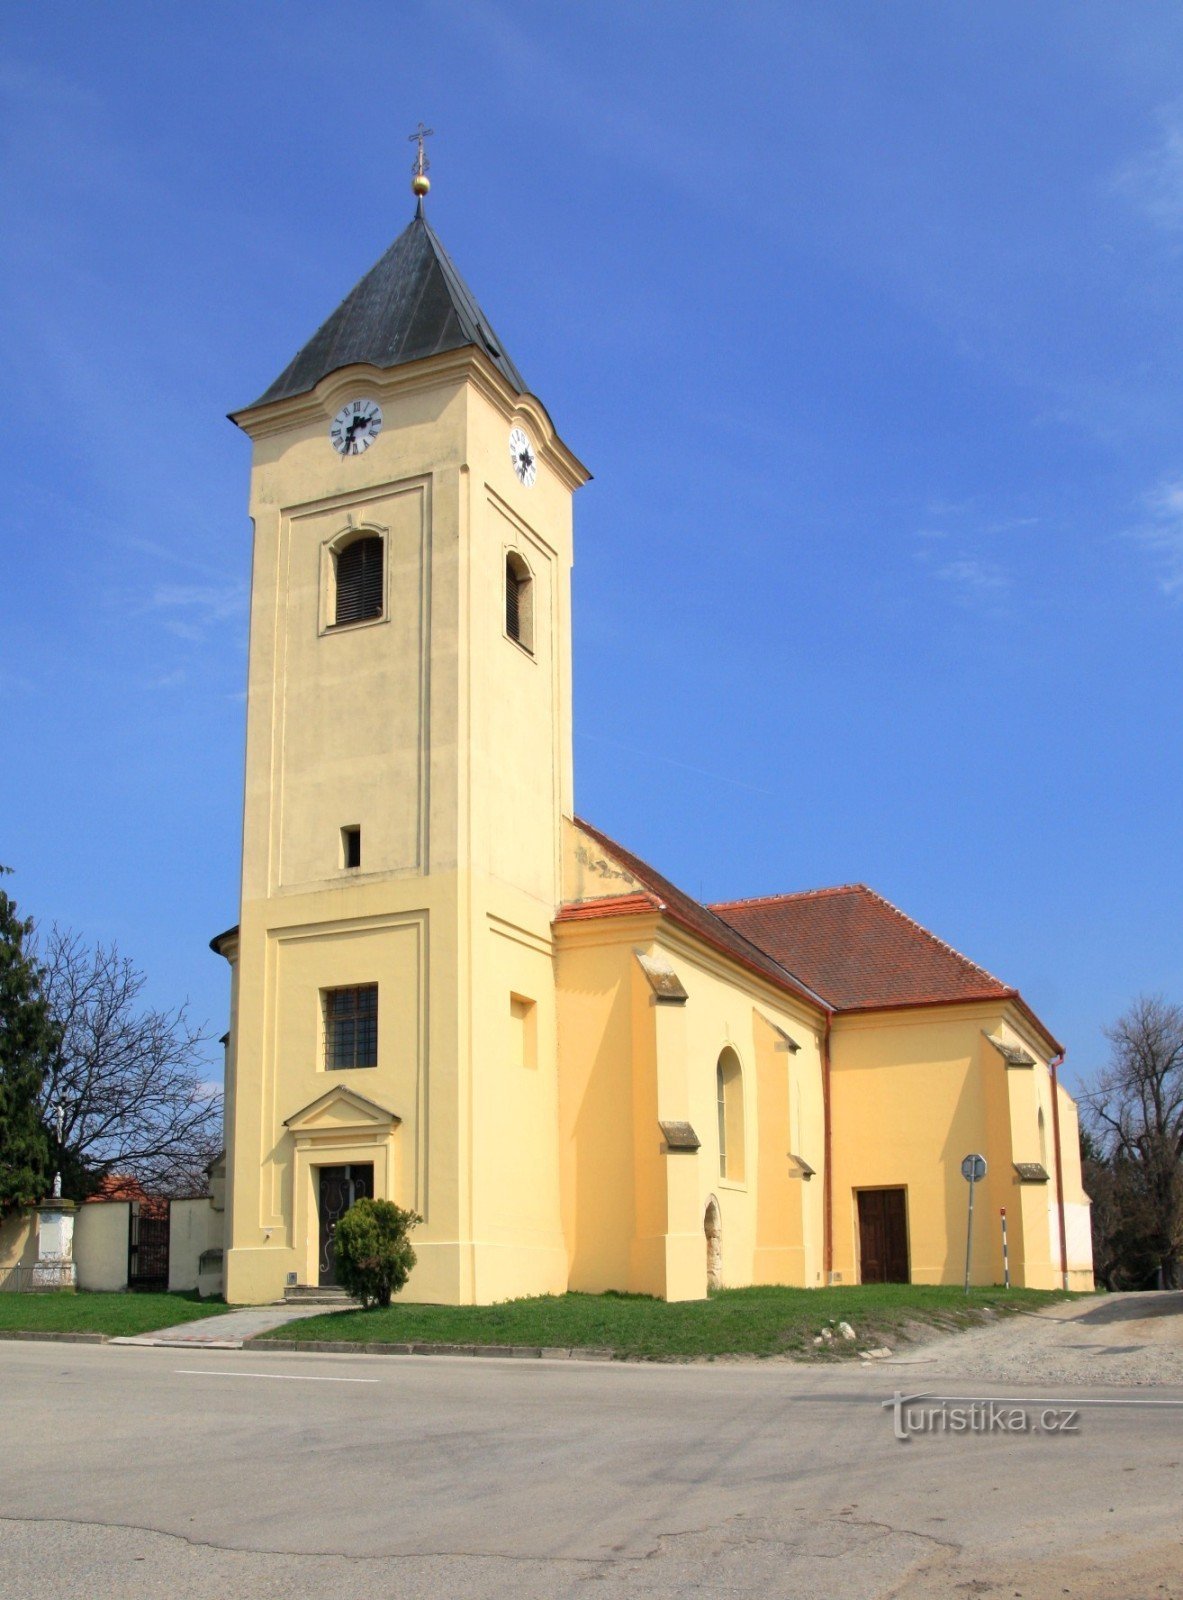 Церква св. Олдржиха в Страхотіні